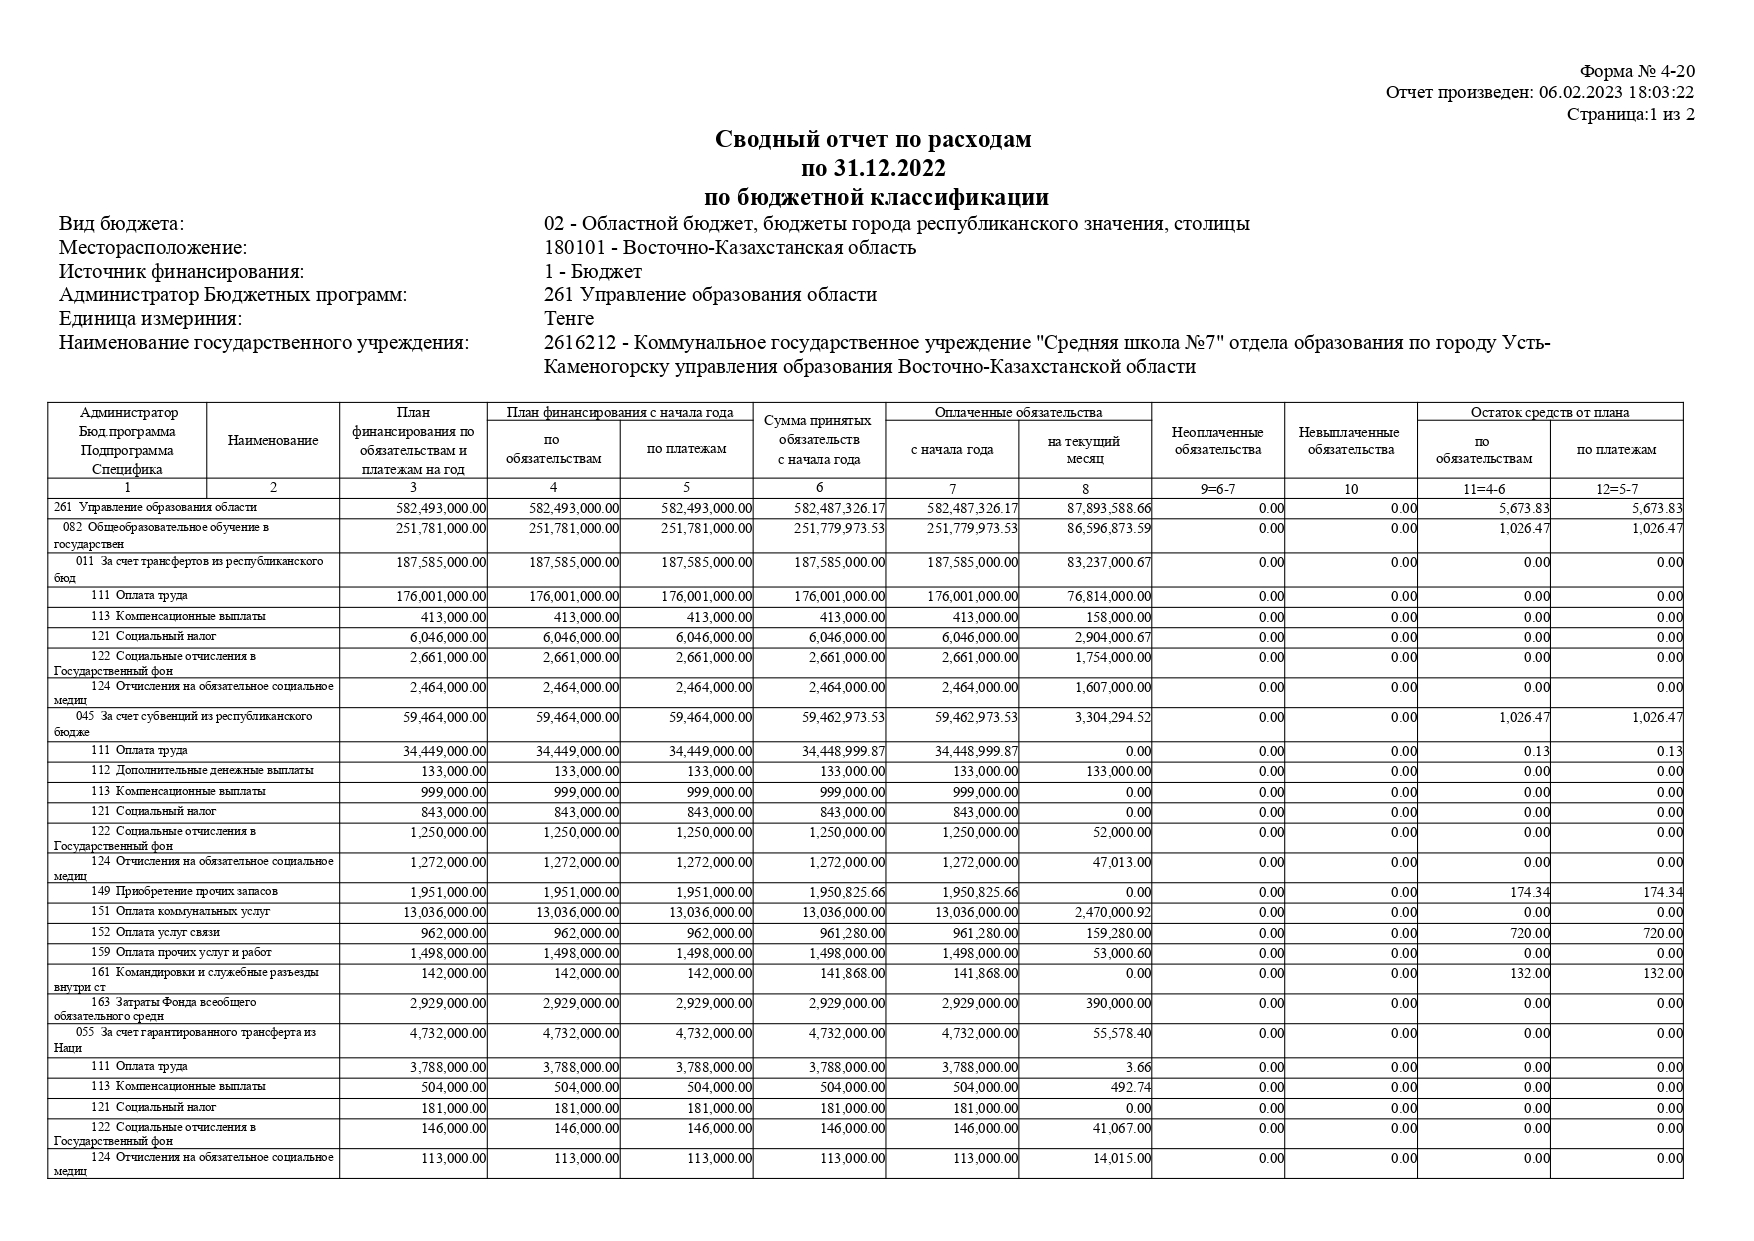 Сводный отчет по расходам по 31.12.2022